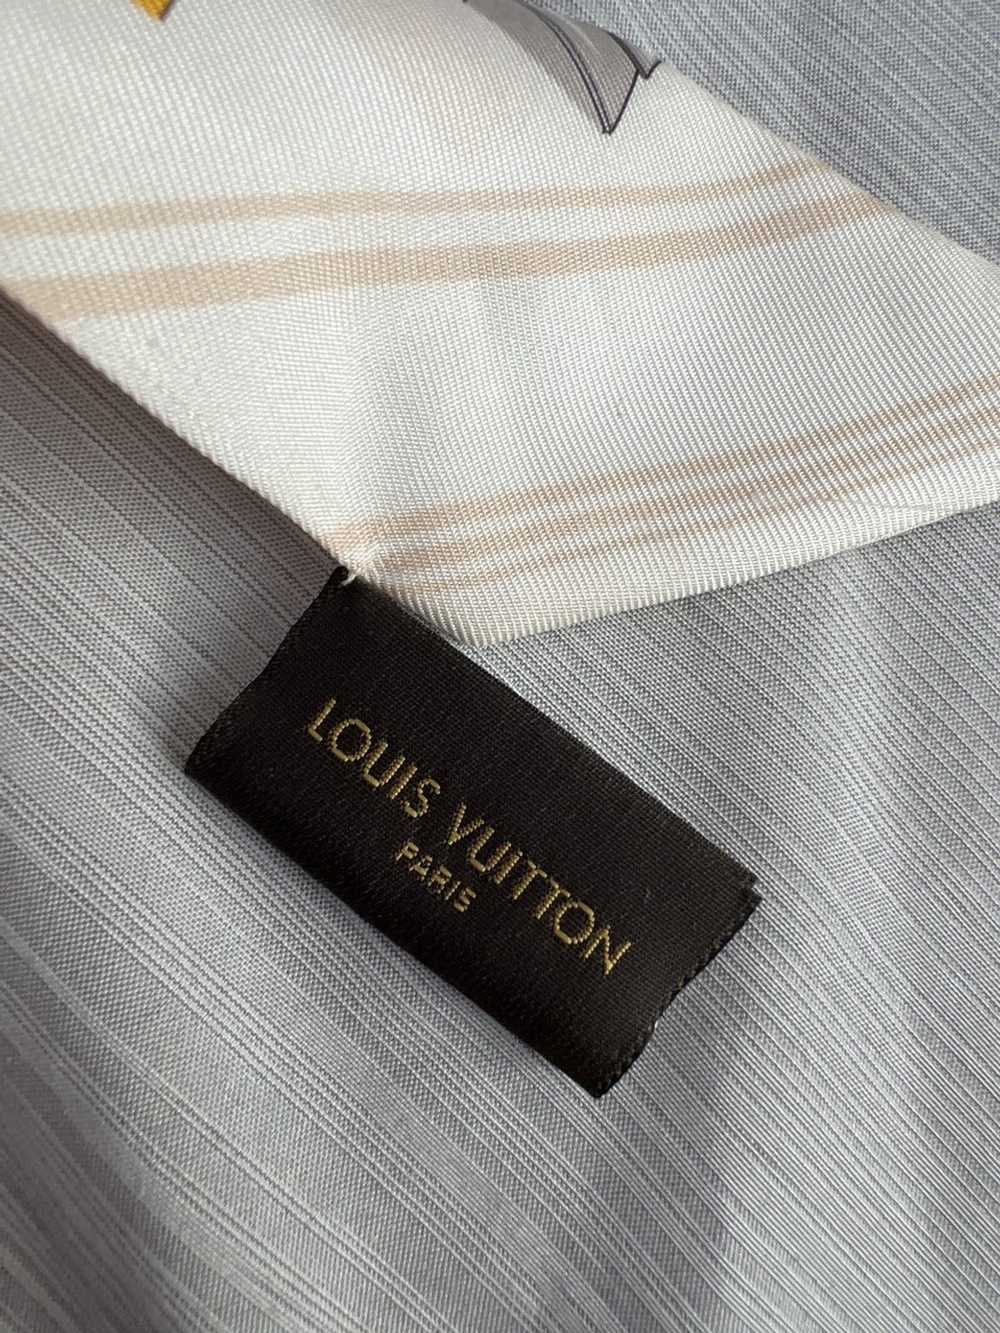 Louis Vuitton Louis Vuitton Bandeau - image 3